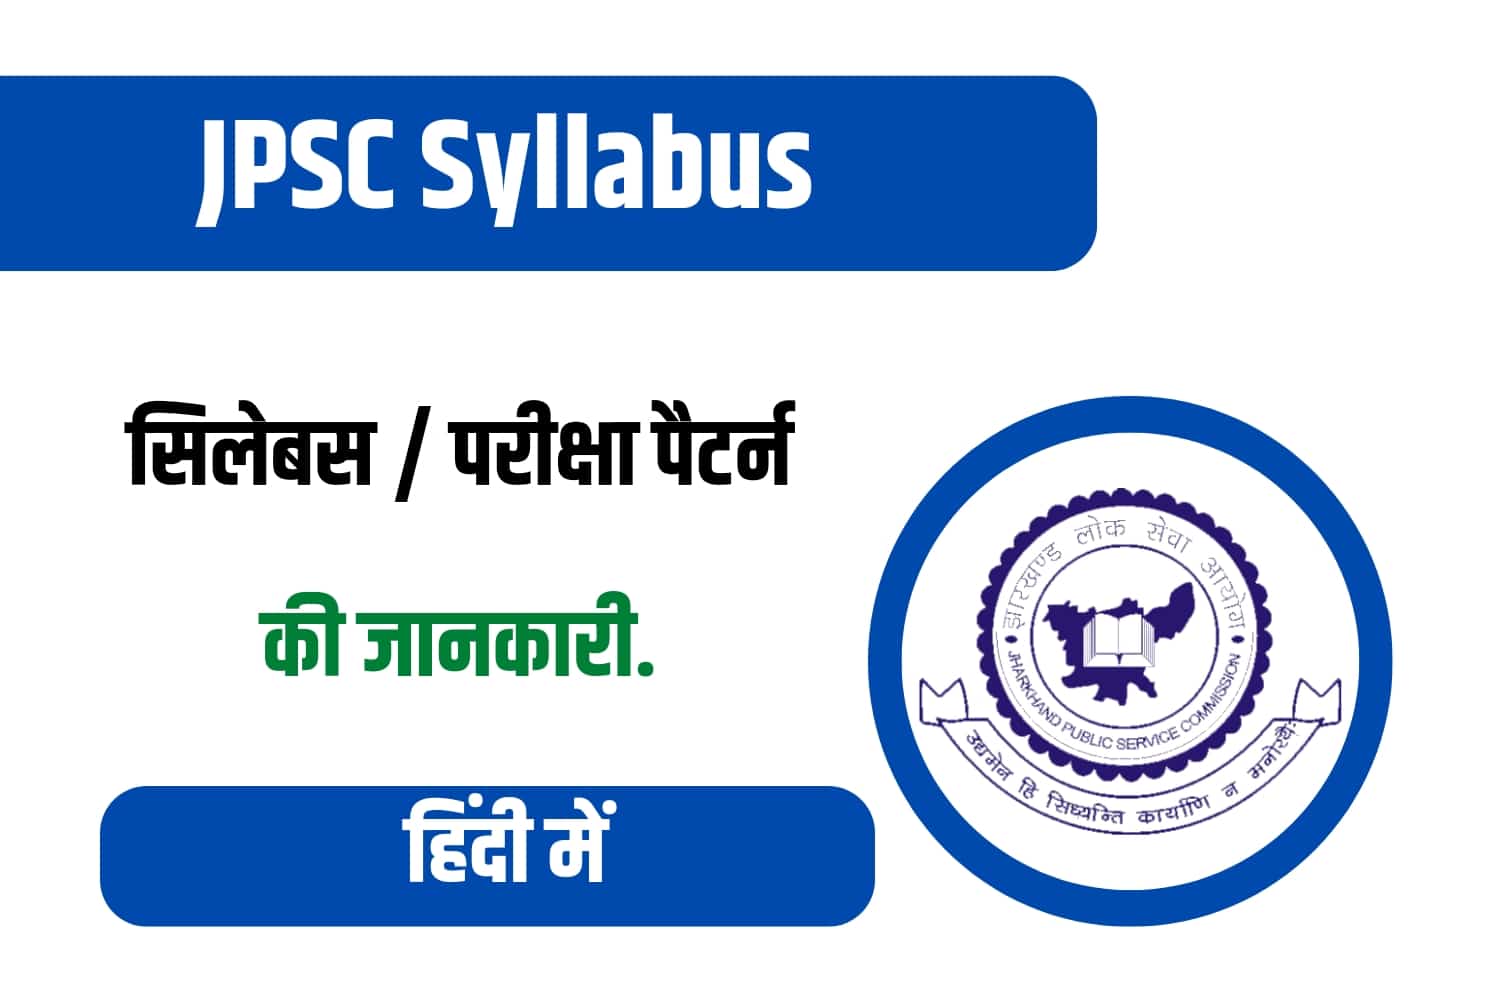 JPSC Syllabus In Hindi | जेपीएससी सिलेबस हिंदी में